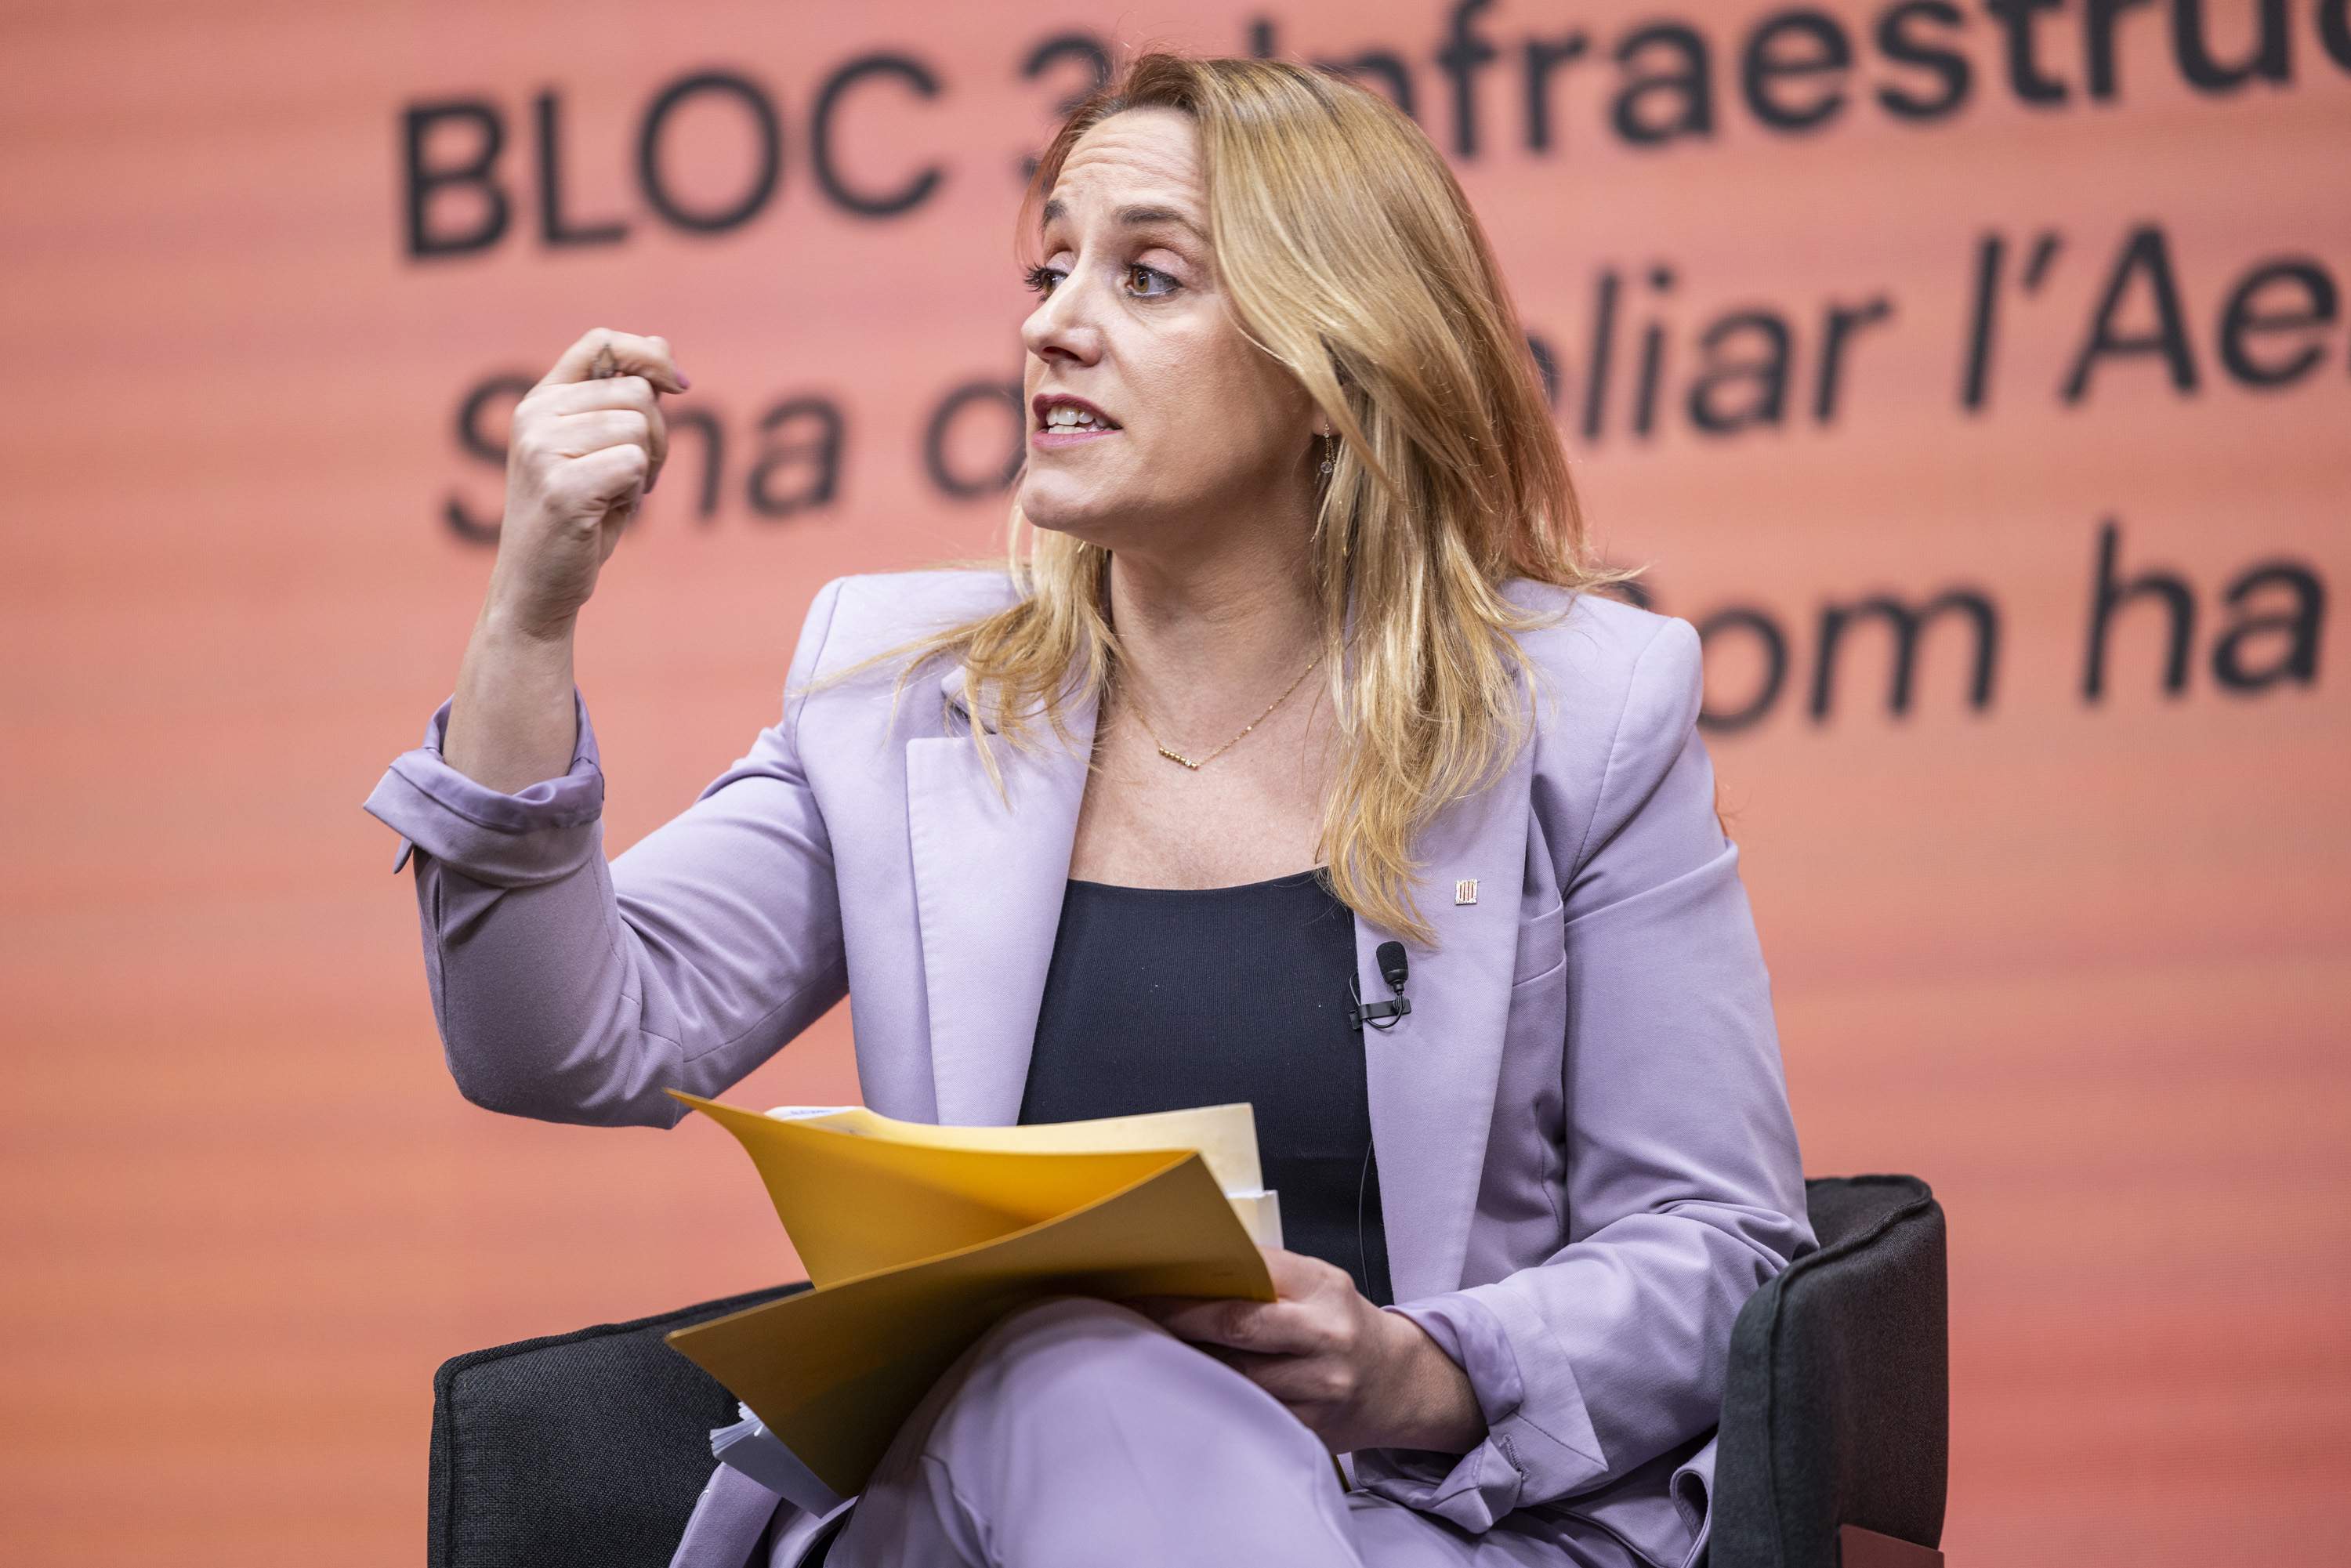 Natàlia Mas (ERC): "Pedimos un giro de 180 grados en el modelo de financiación"